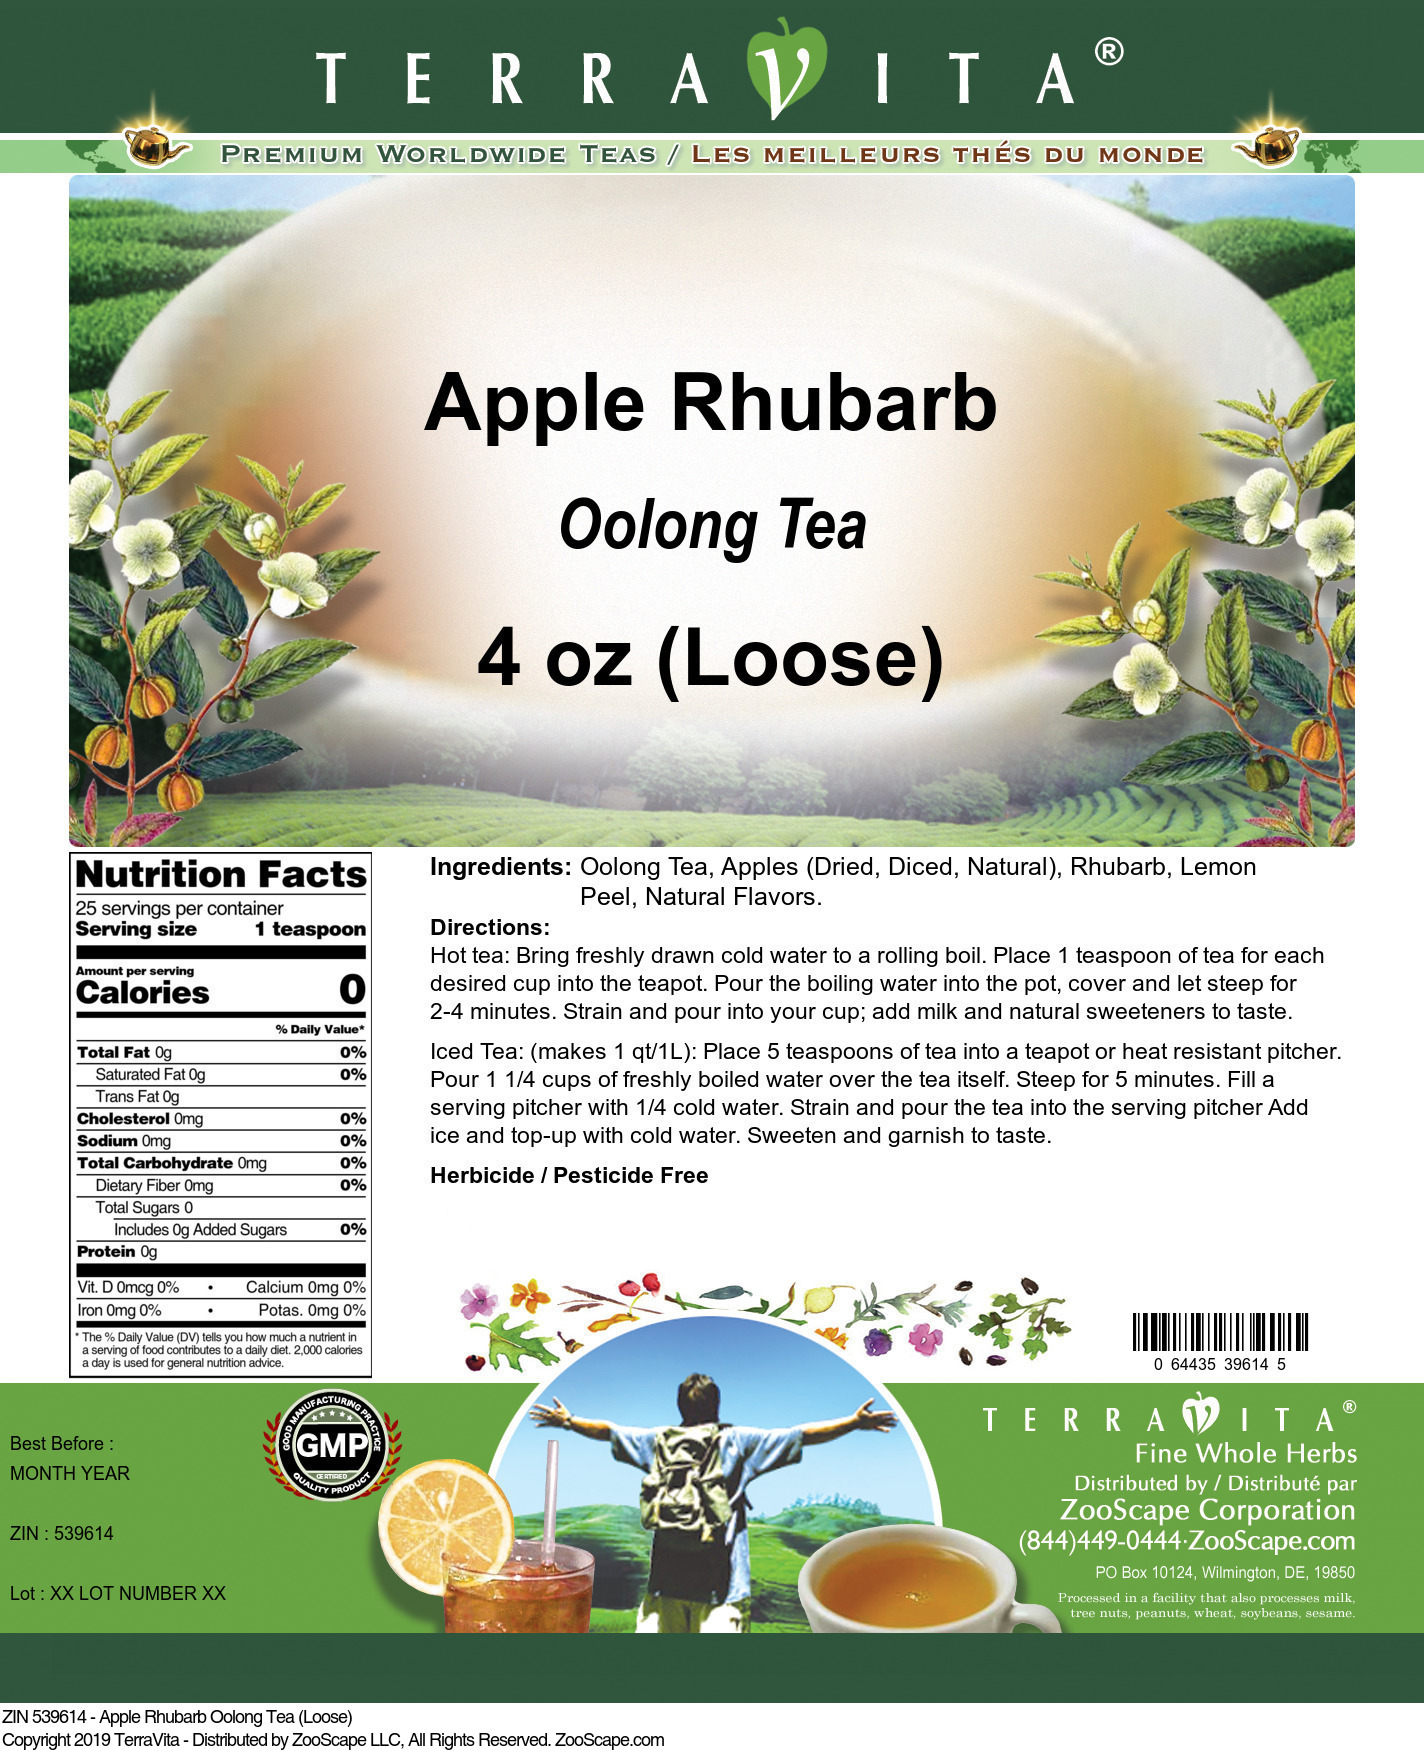 Apple Rhubarb Oolong Tea (Loose) - Label